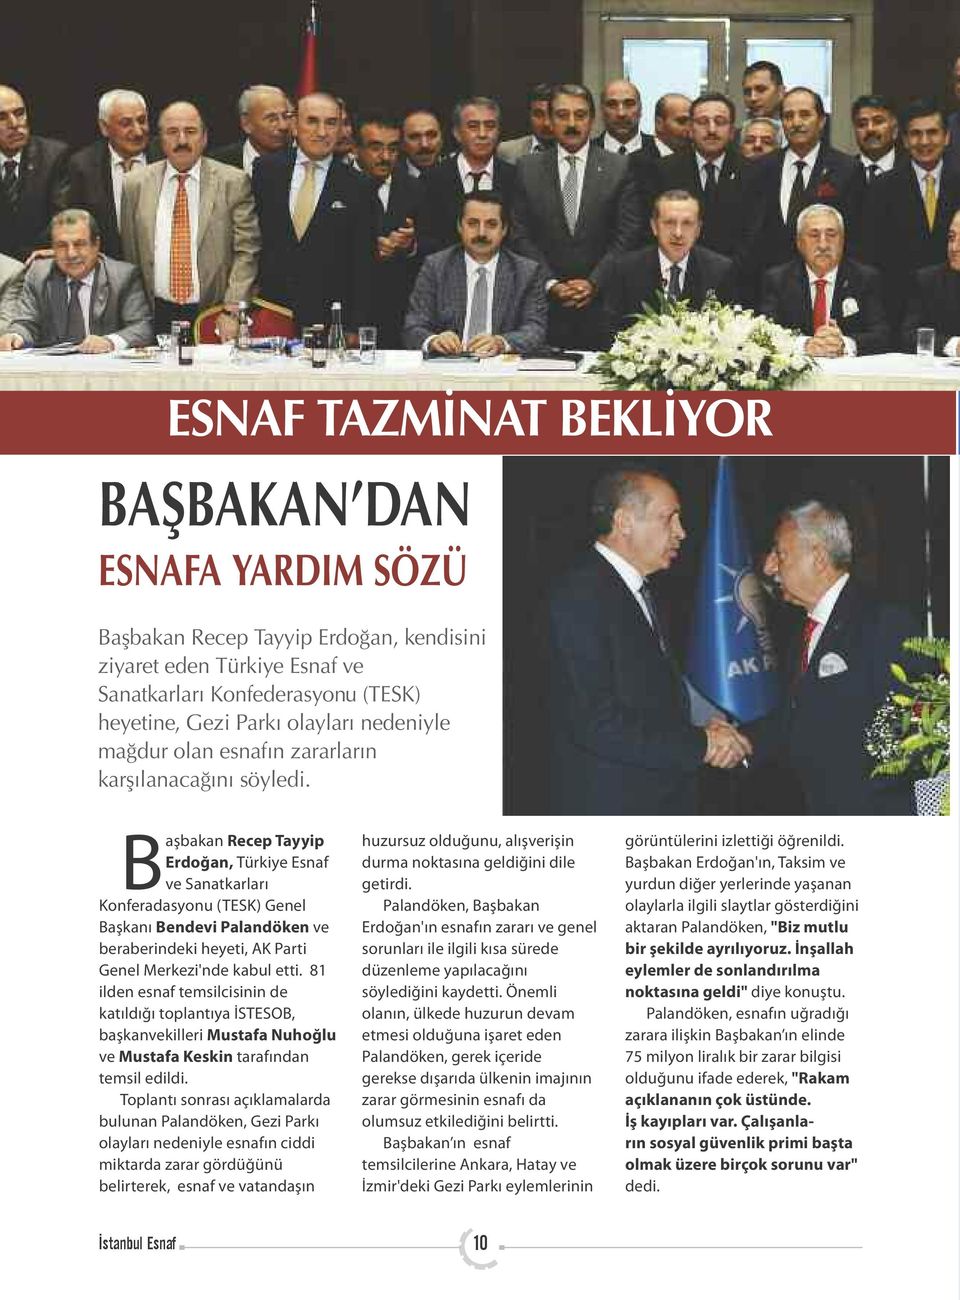 Başbakan Recep Tayyip Erdoğan, Türkiye Esnaf ve Sanatkarları Konferadasyonu (TESK) Genel Başkanı Bendevi Palandöken ve beraberindeki heyeti, AK Parti Genel Merkezi'nde kabul etti.